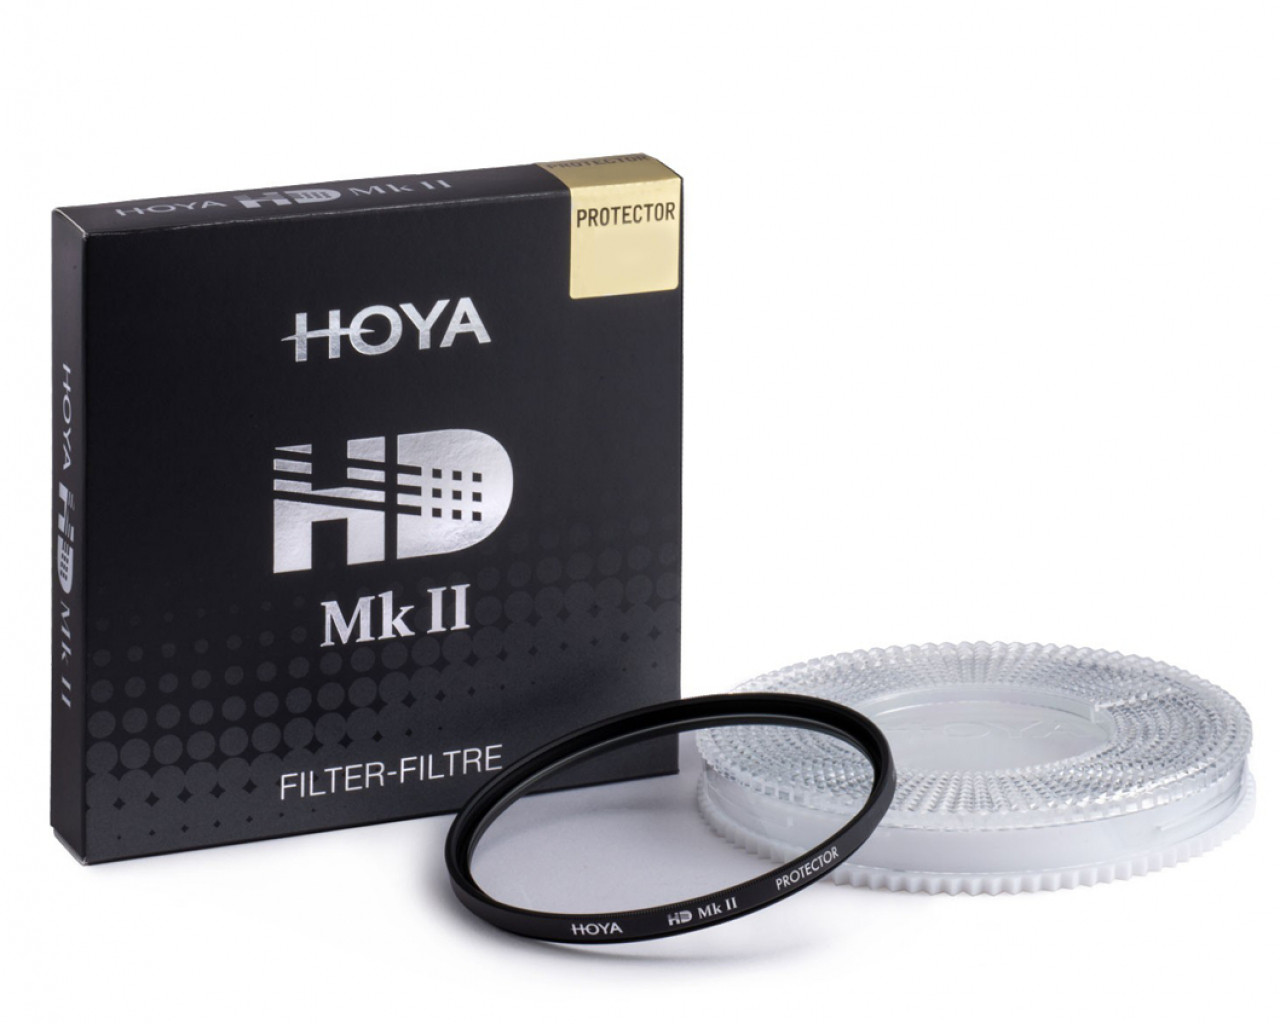 Hoya Filtro HD mkII Protector 77mm